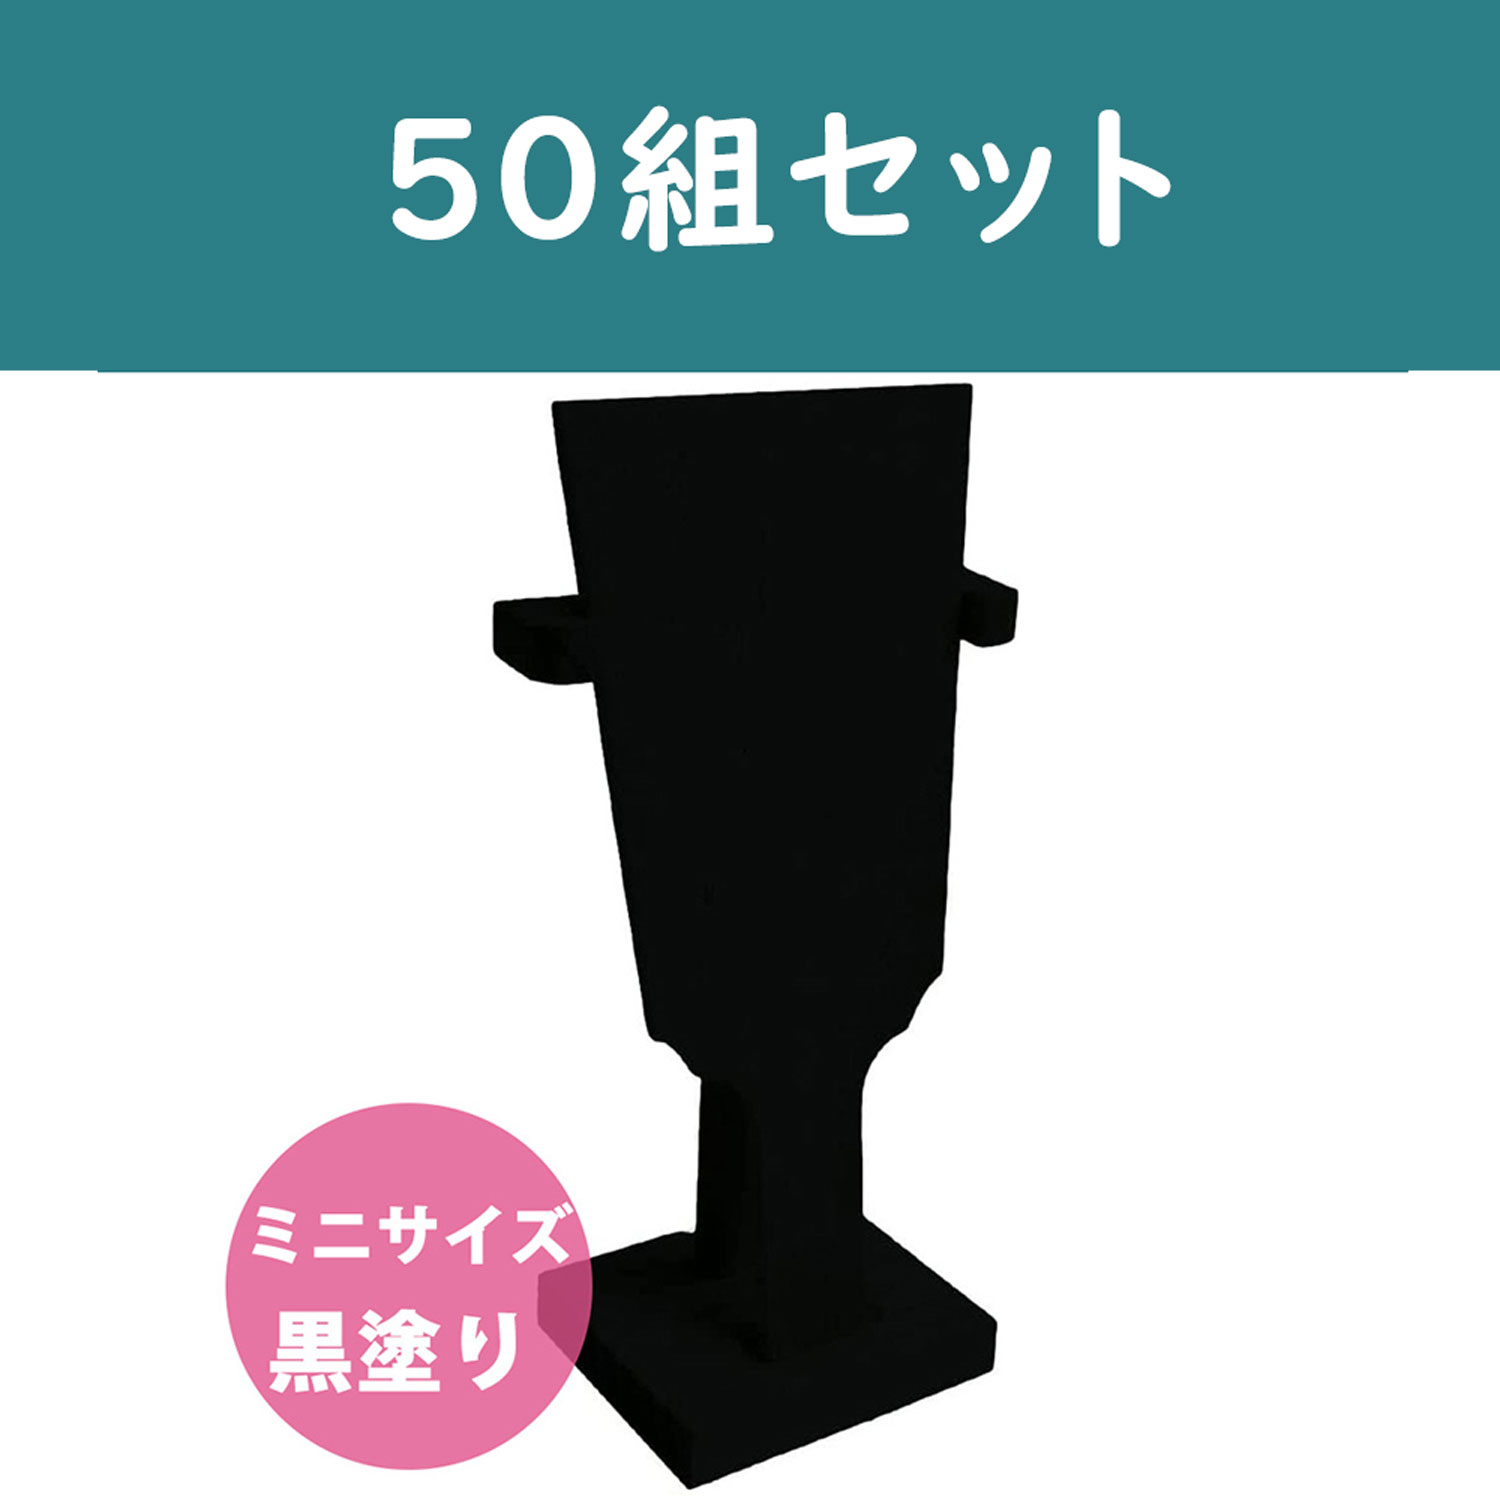 【第二弾】CC1291-50 ミニ羽子板 黒 50組 (セット)